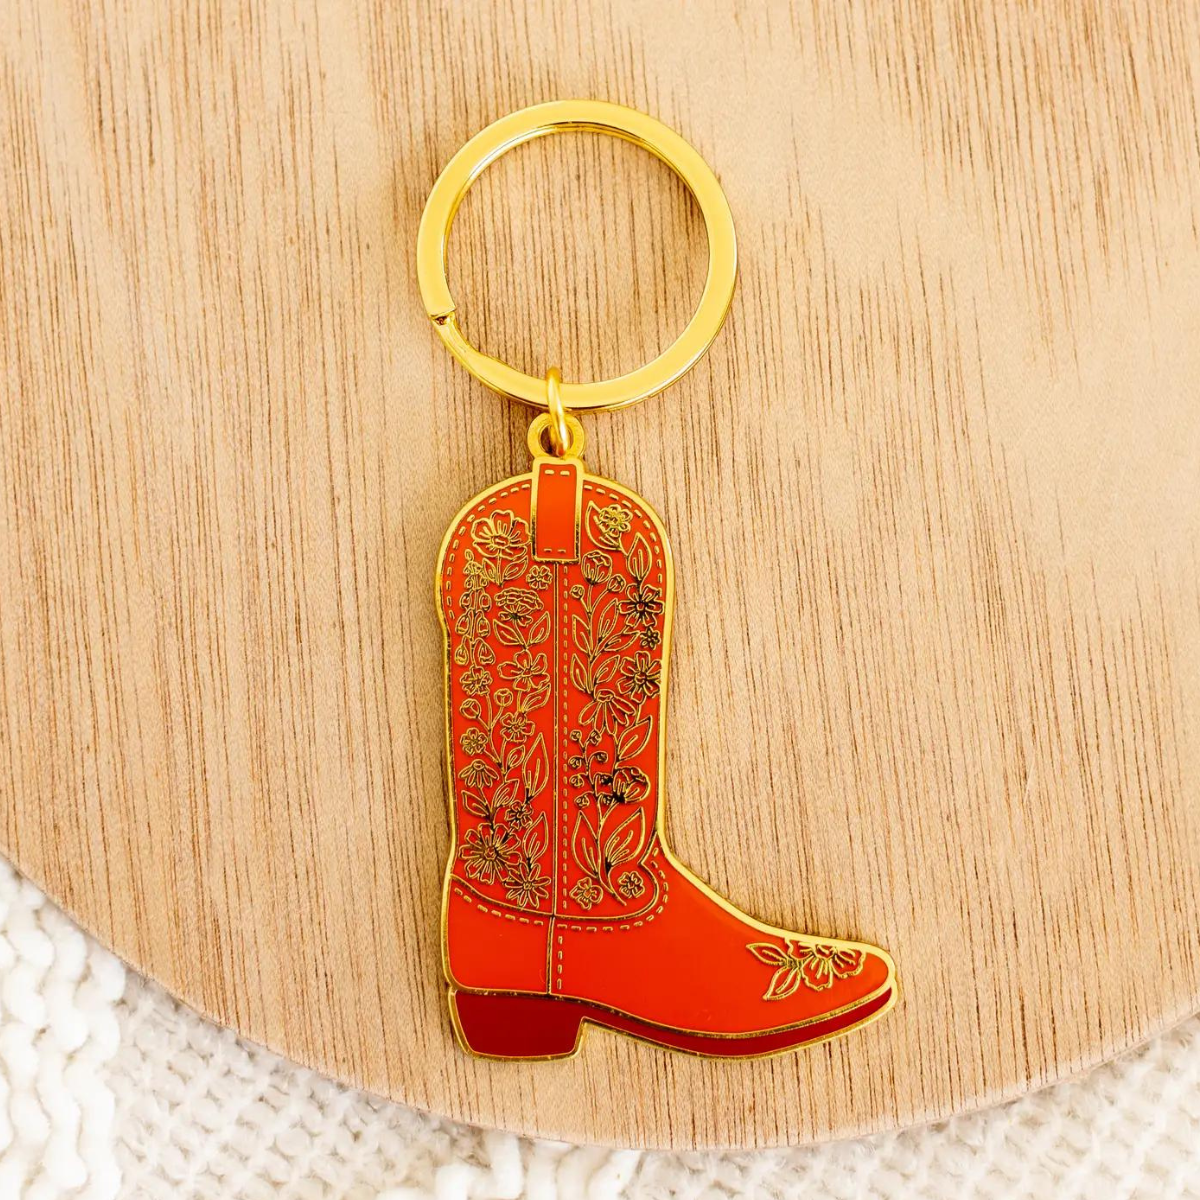 Le porte-clés Botte de Cowboy Fleurie est un symbole intemporel du style western.